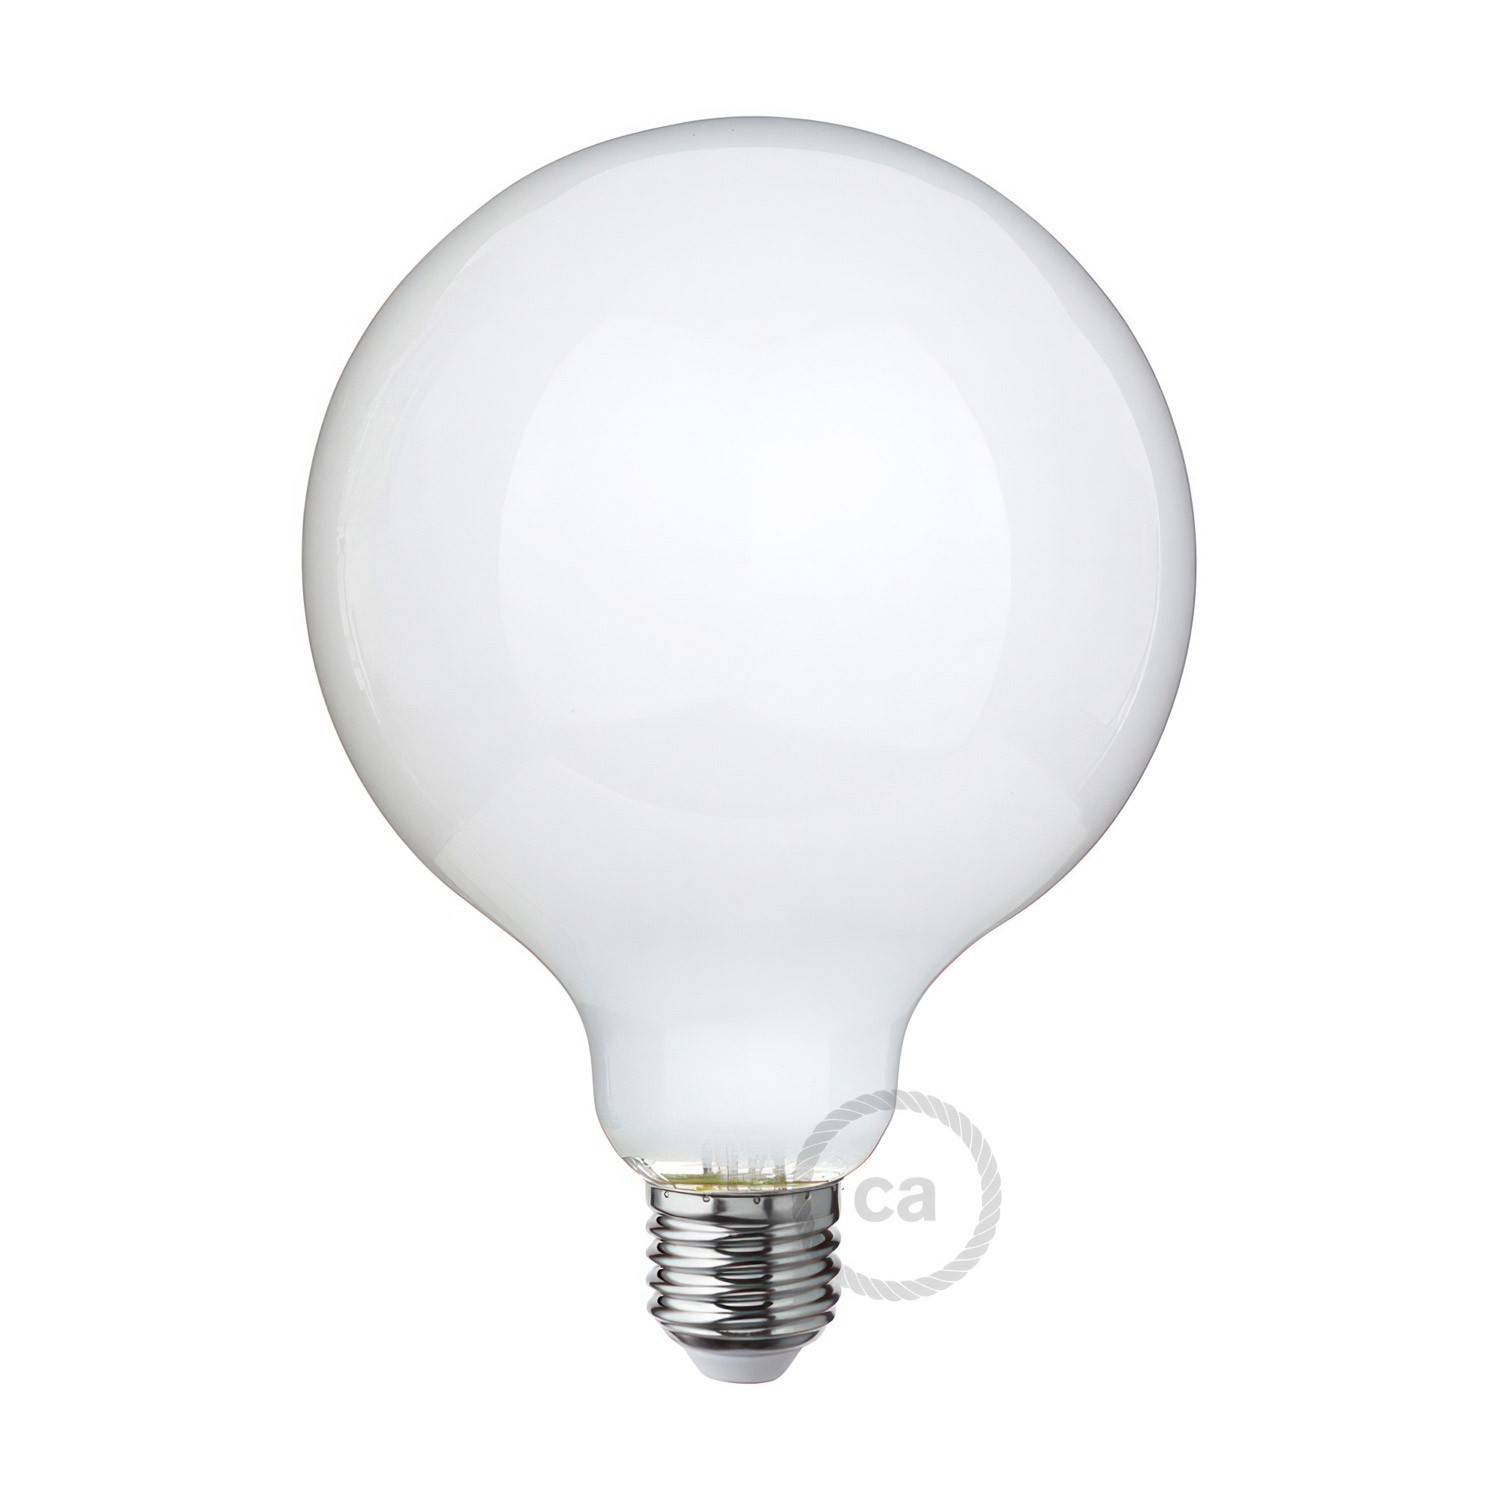 LED Milky White Light Bulb - Globe G125 - 7W 806Lm E27 2700K Dimmable